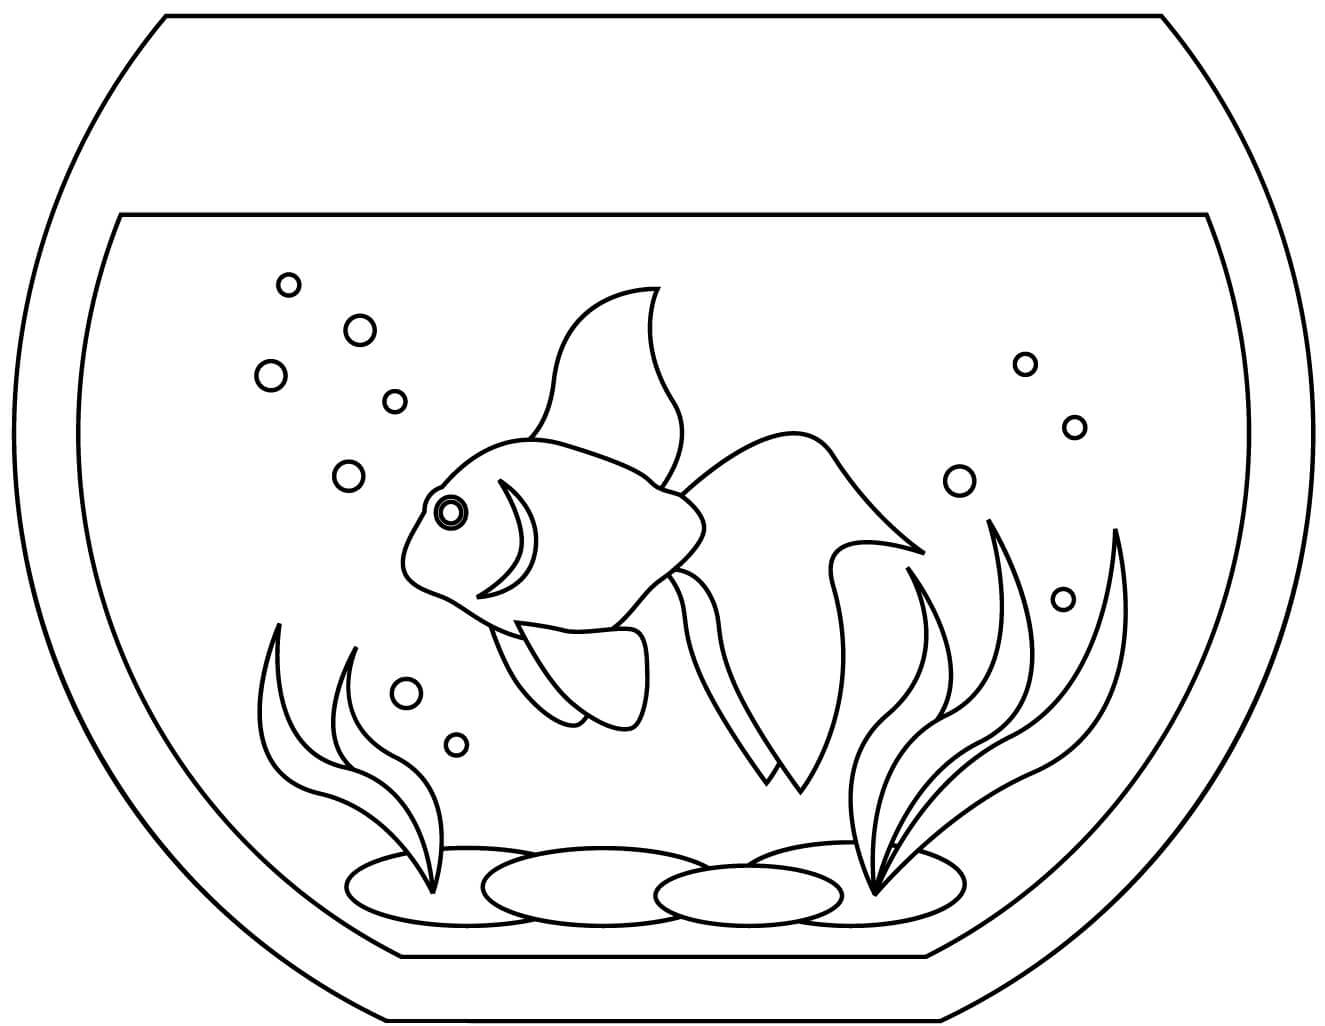 Ein Fisch im Aquarium